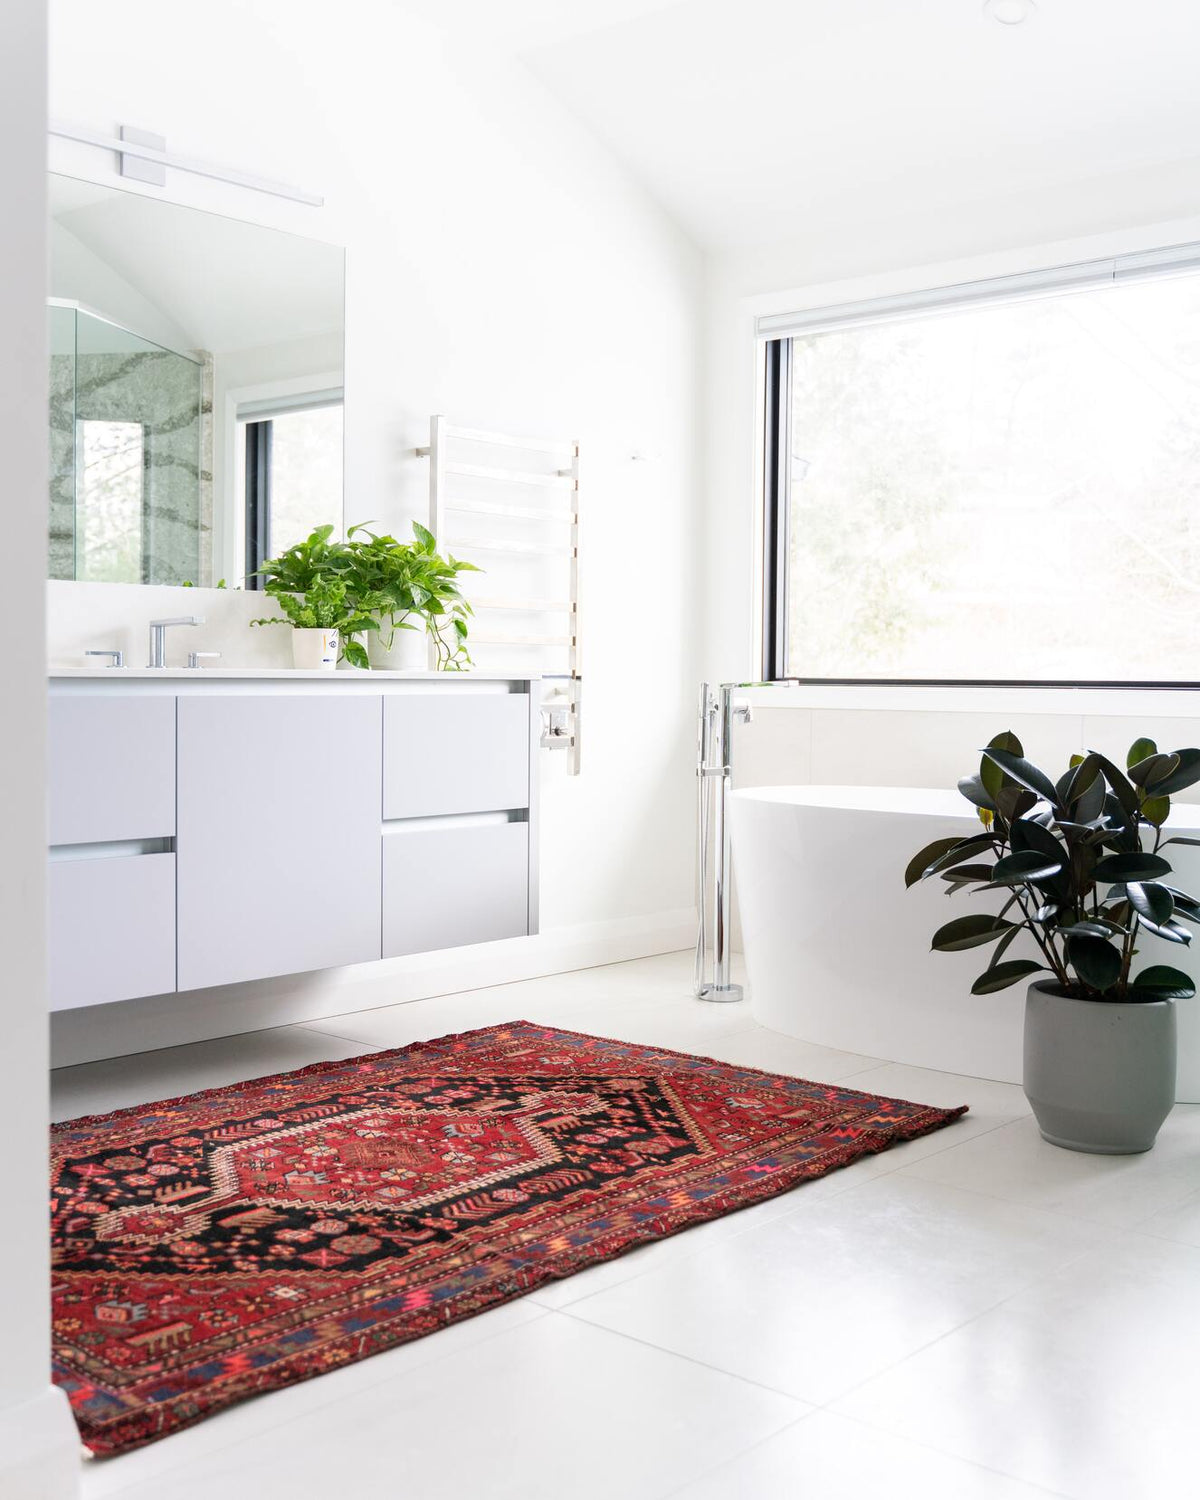 Helles Badezimmer mit einem orientalischen Teppich vor dem Waschbecken, auf letzerem Efeutute und Nestfarn, neben der Badewanne ein Gummibaum ein grauem Topf